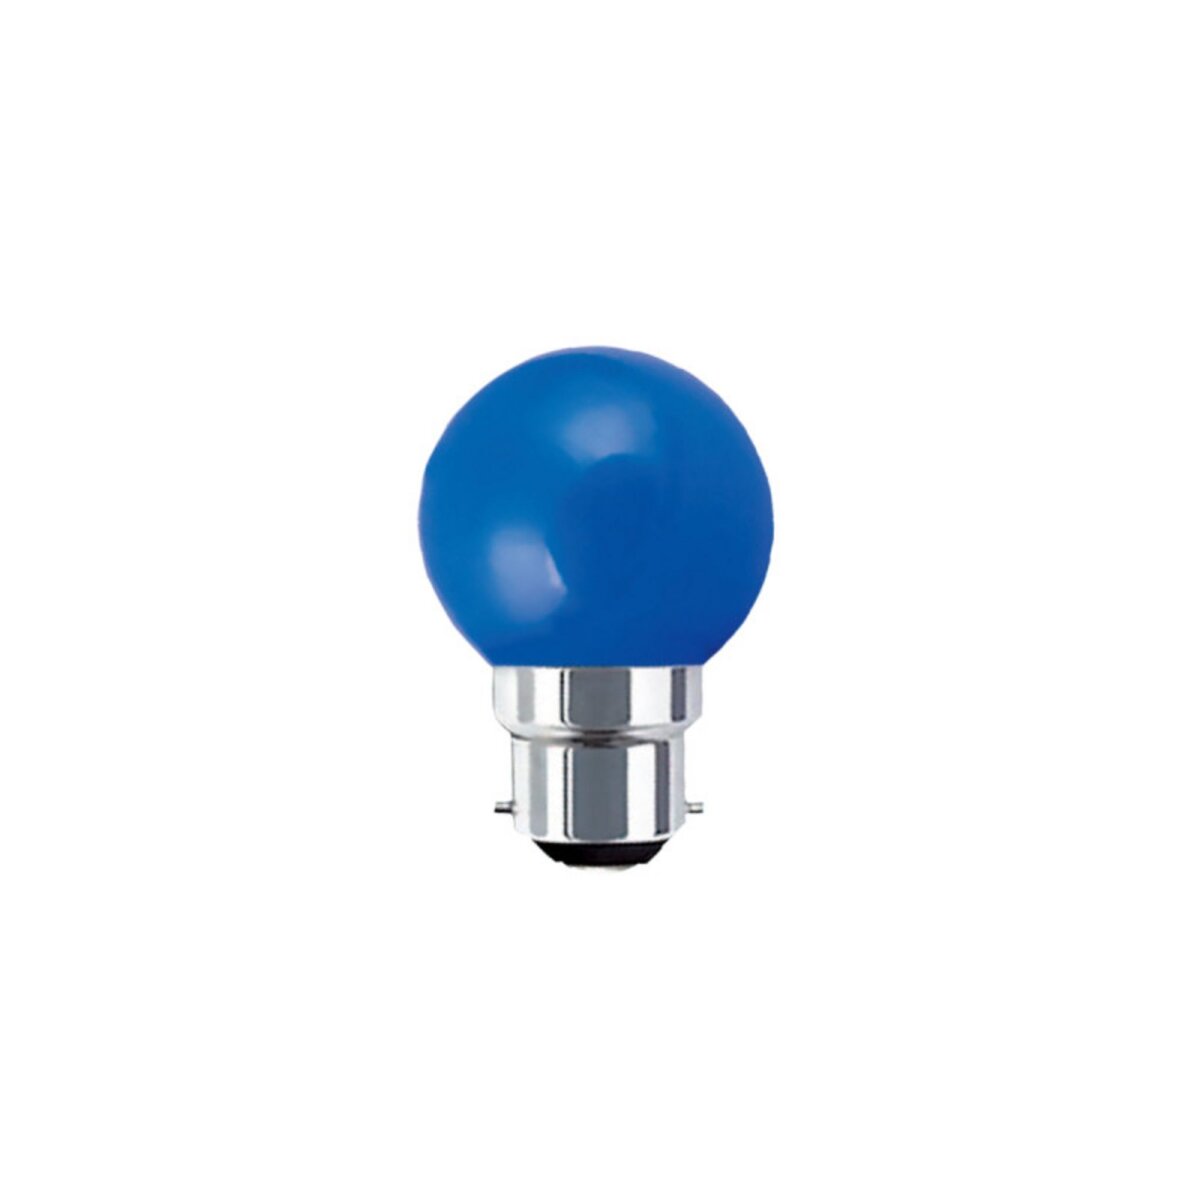  Ampoule LED guinguette bleue XXCELL - 1 W - B22